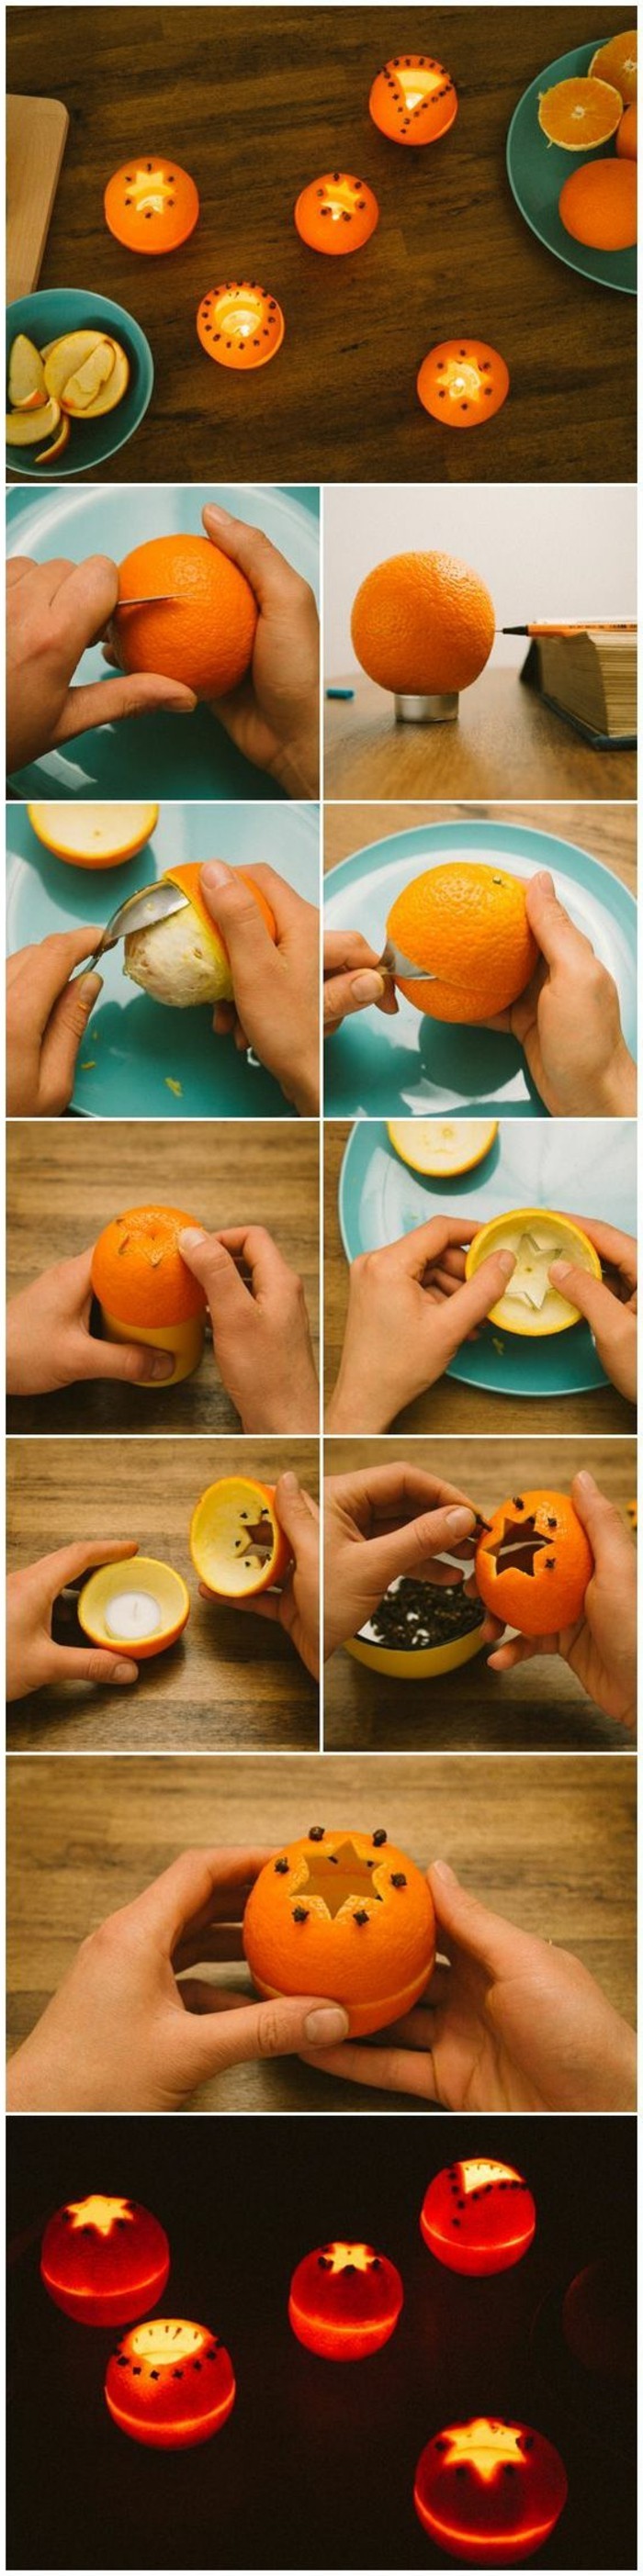 superbe-idee-de-bougeoirs-faits-a-partir-d-oranges-bricolage-noel-facile-a-realiser